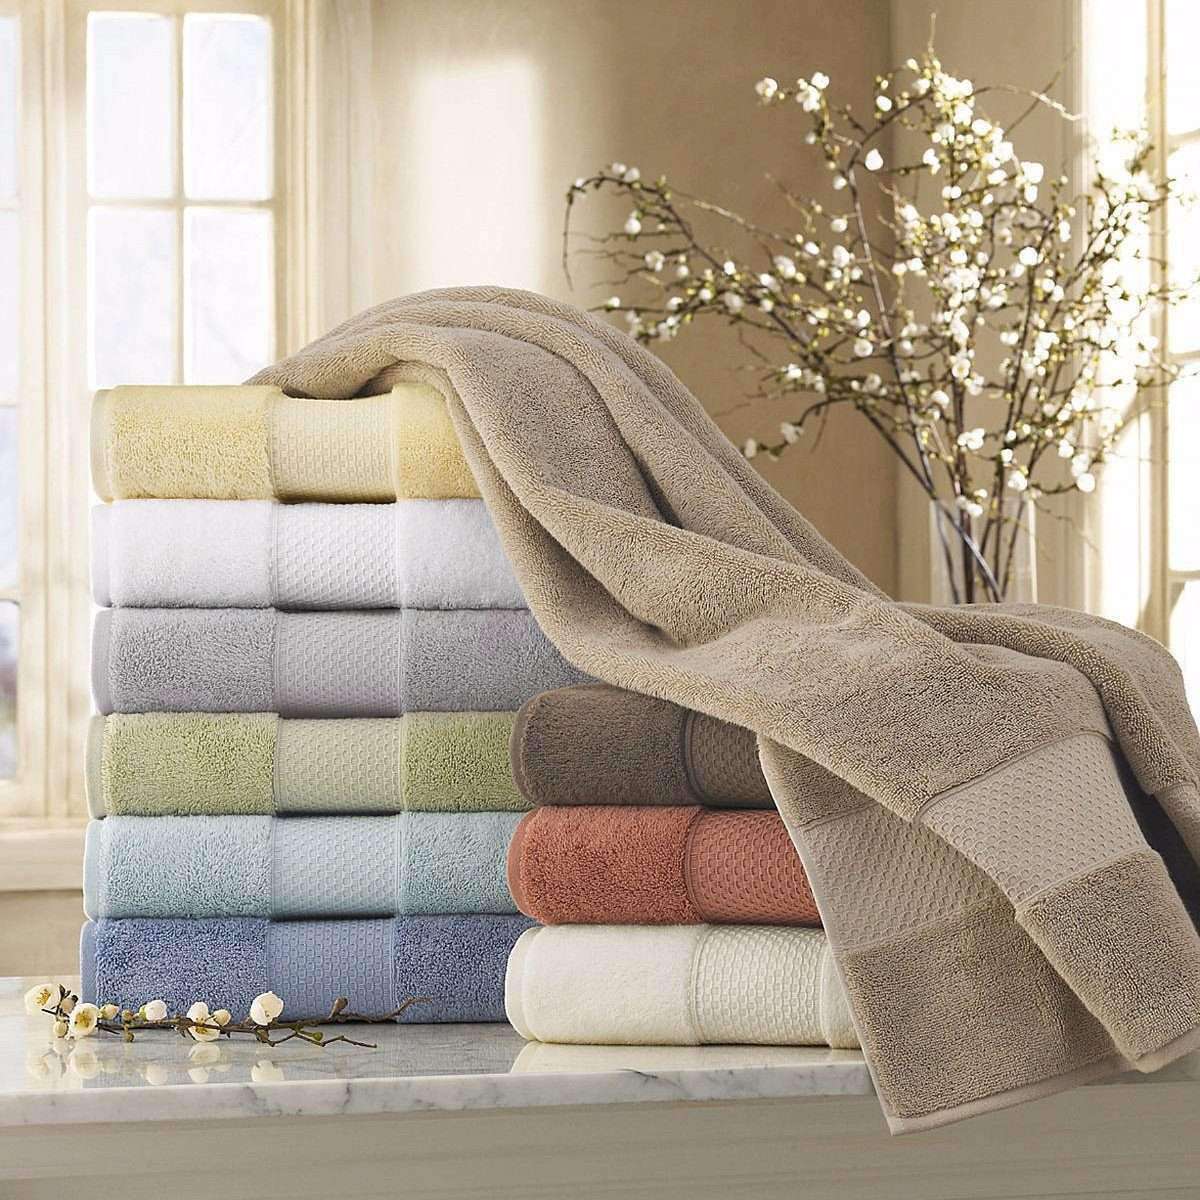 Textile полотенце. Шикарное полотенце. Текстиль для дома. Постельное белье и полотенца. Текстиль полотенца.